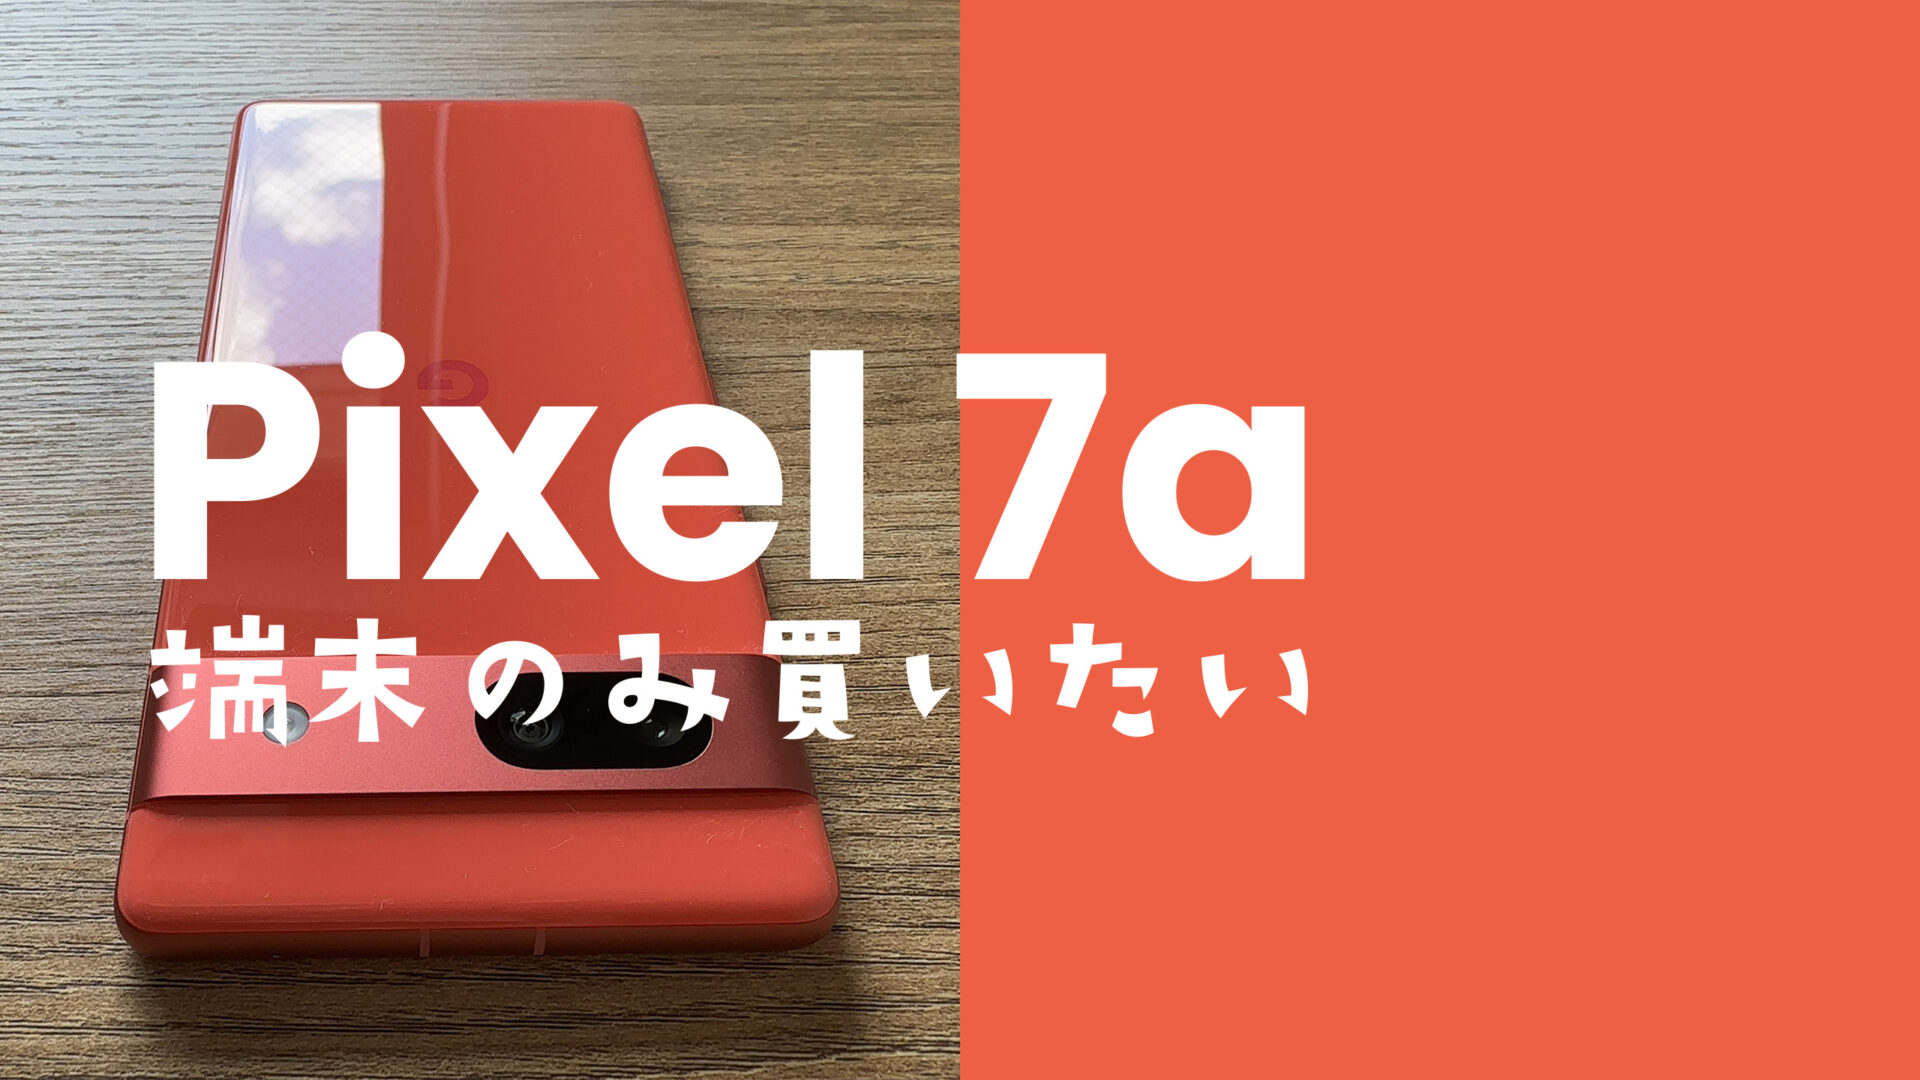 Google Pixel 7a【ピクセル7a】を端末のみ購入&回線契約なしで本体を 